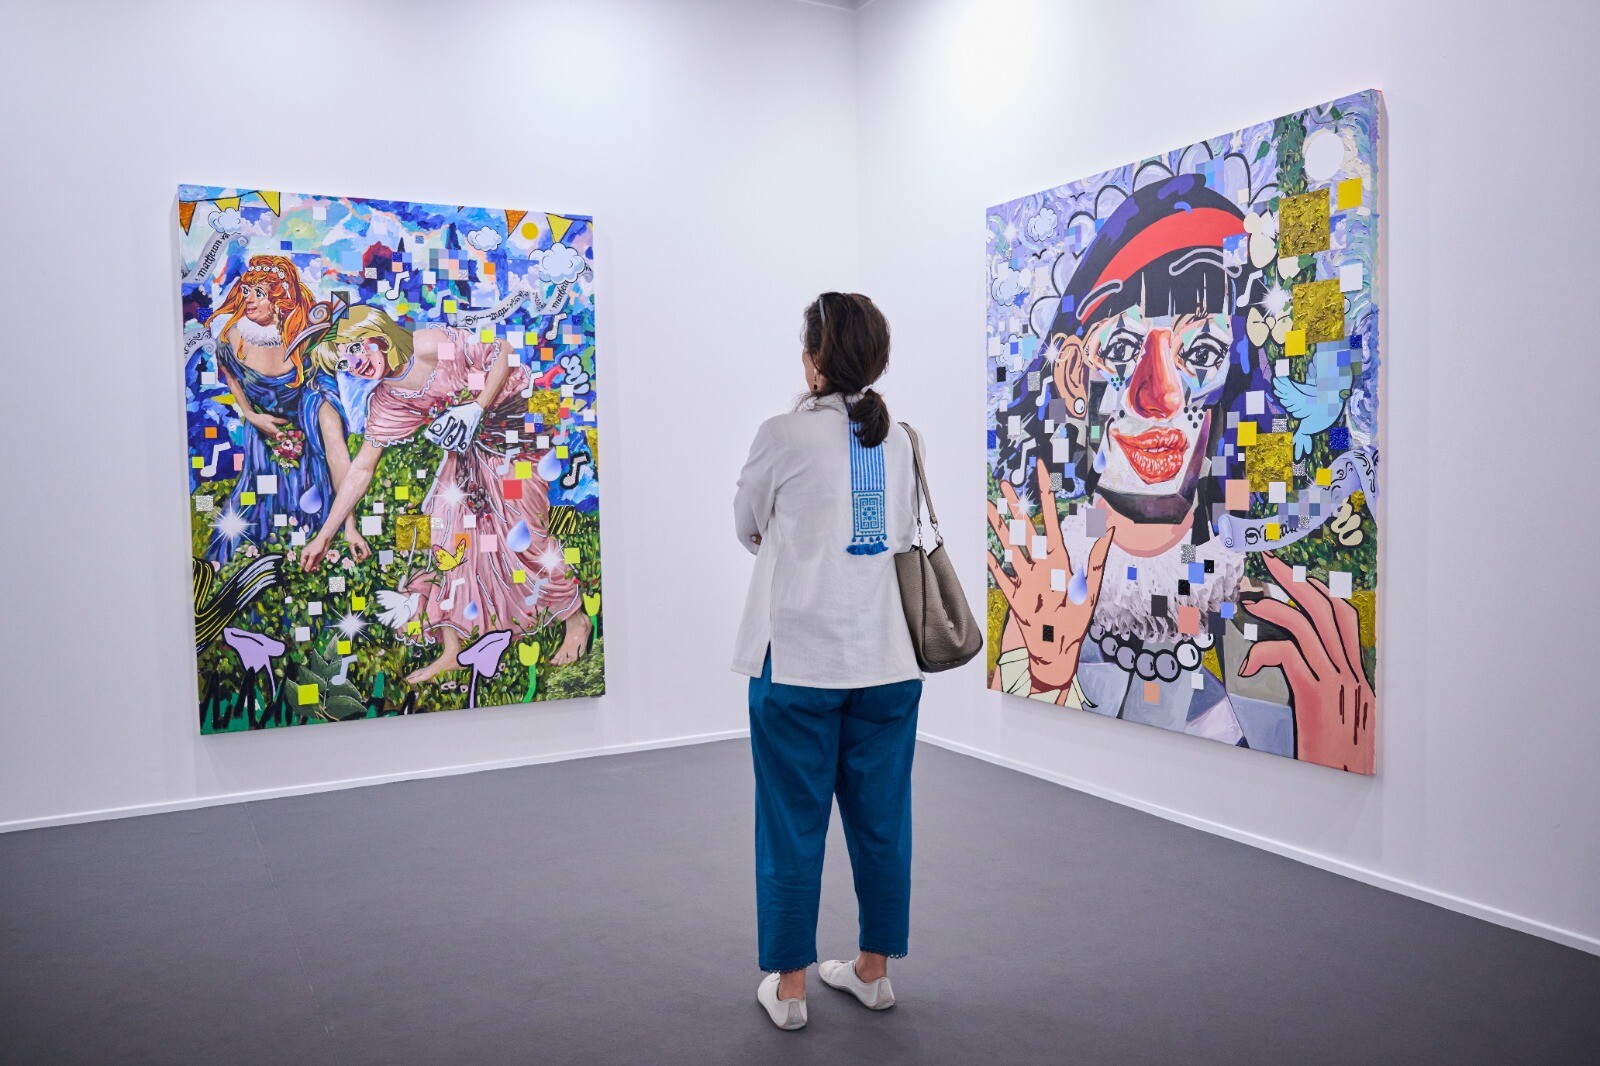 أرابيسك لندن تحاور السيدة زين محجوب عن معرض آرت دبي: بوصلة الفن في الشرق الأوسط ومنارة مفعمة بالإبداع 